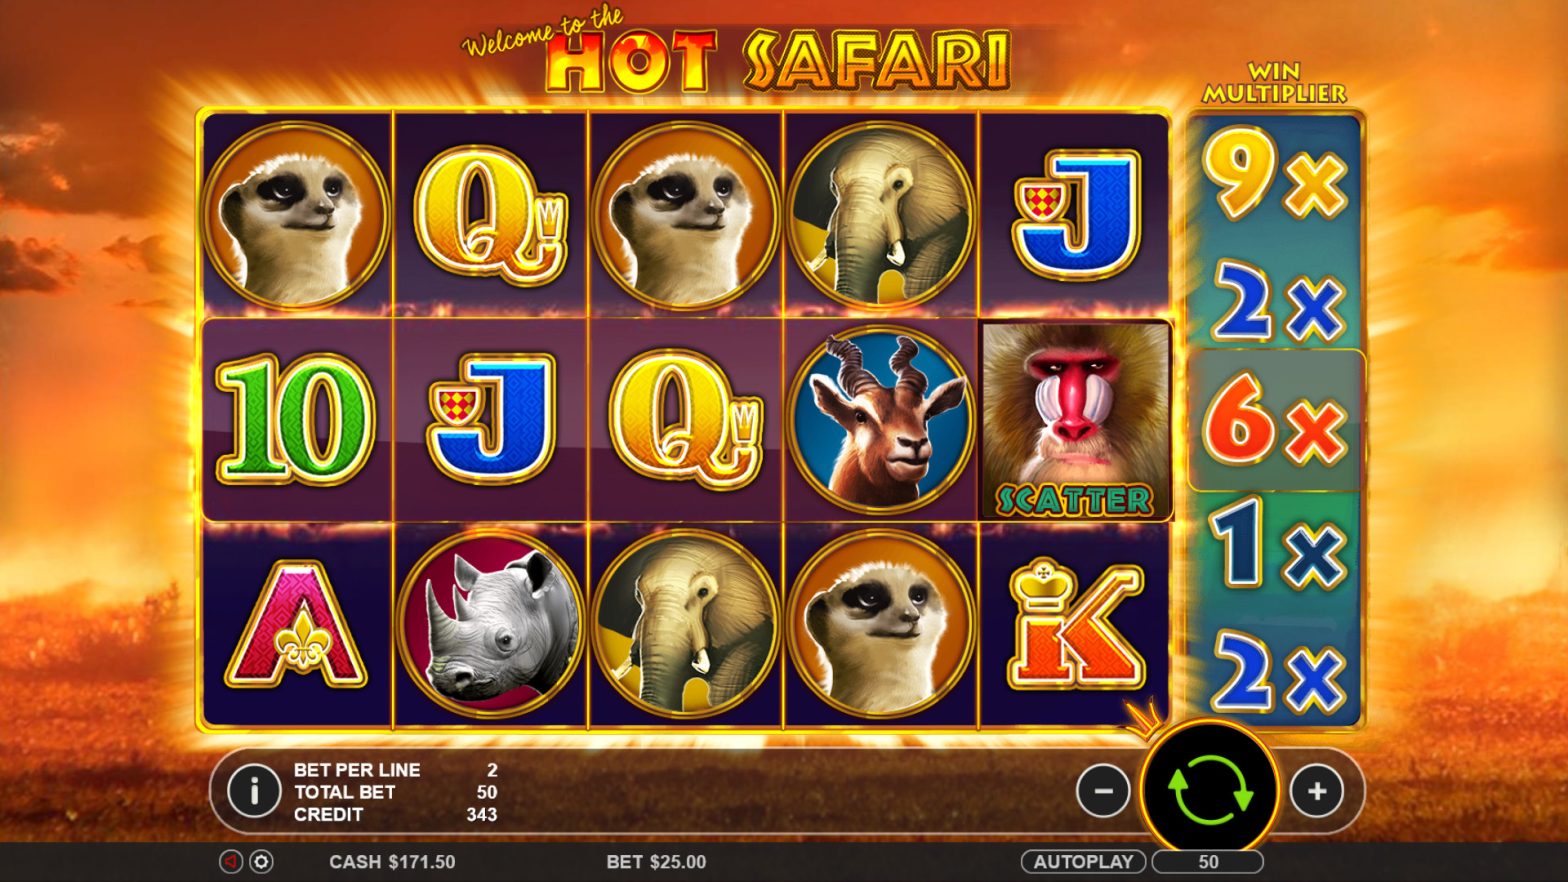 Hot Safari game